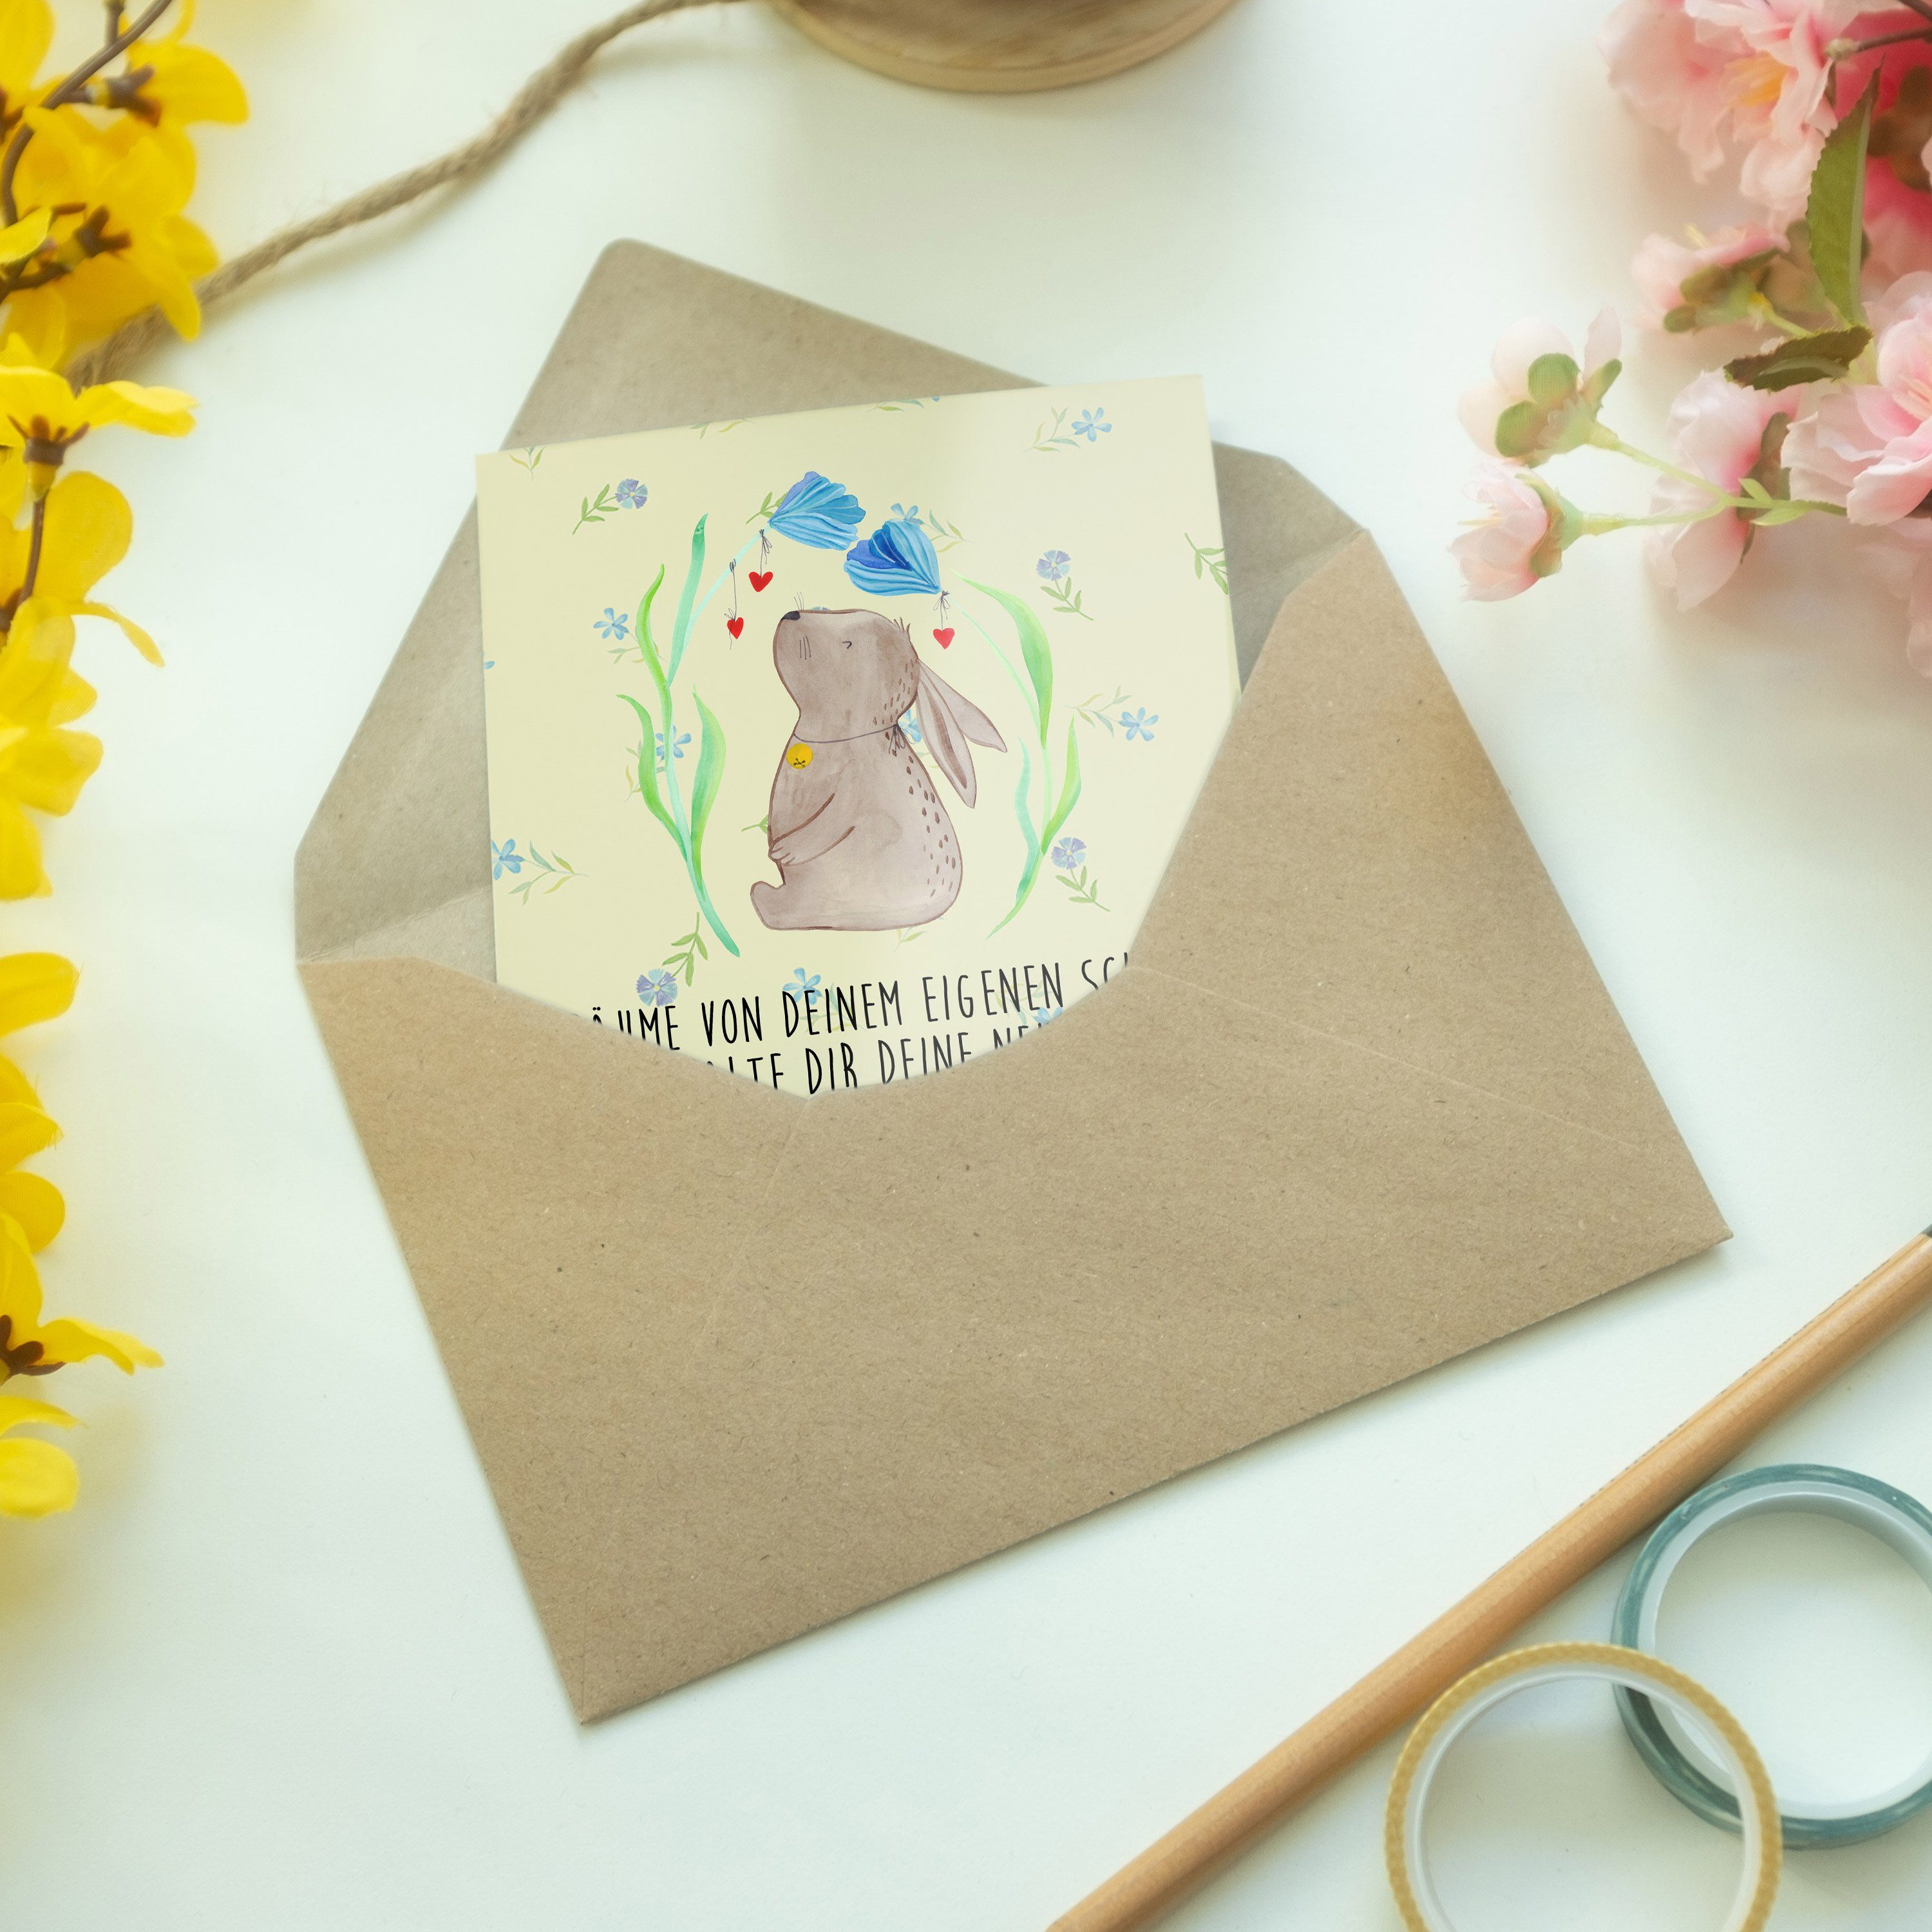 Mr. & Mrs. Panda - Geschenk, - Osterdeko, Grußkarte Geburtstagskarte, Blumig Karte Blume Hase